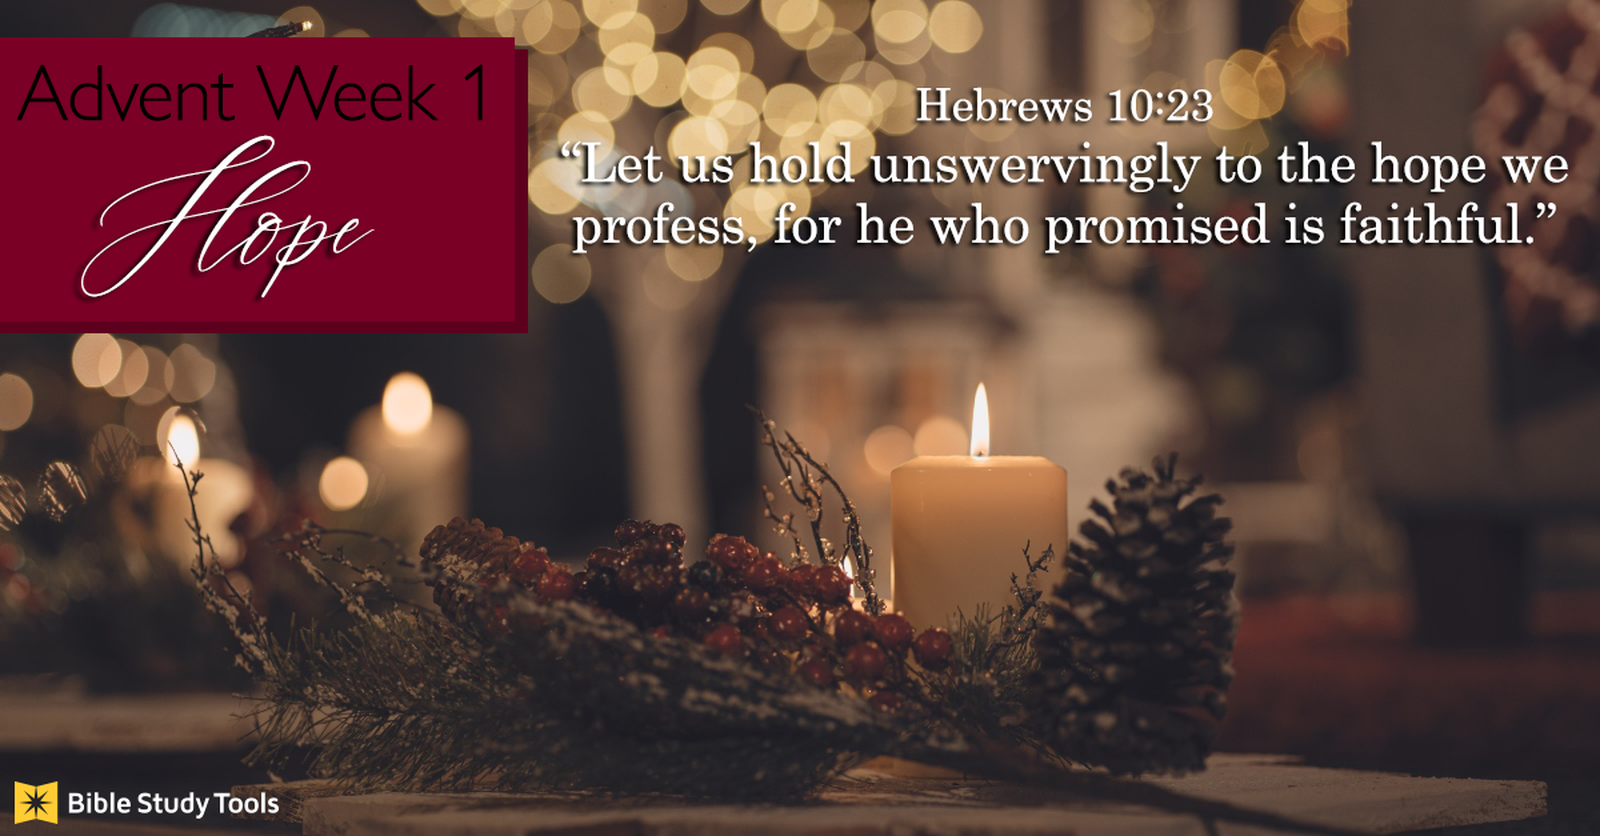 Advent Week 1 - Hope ecard, online card